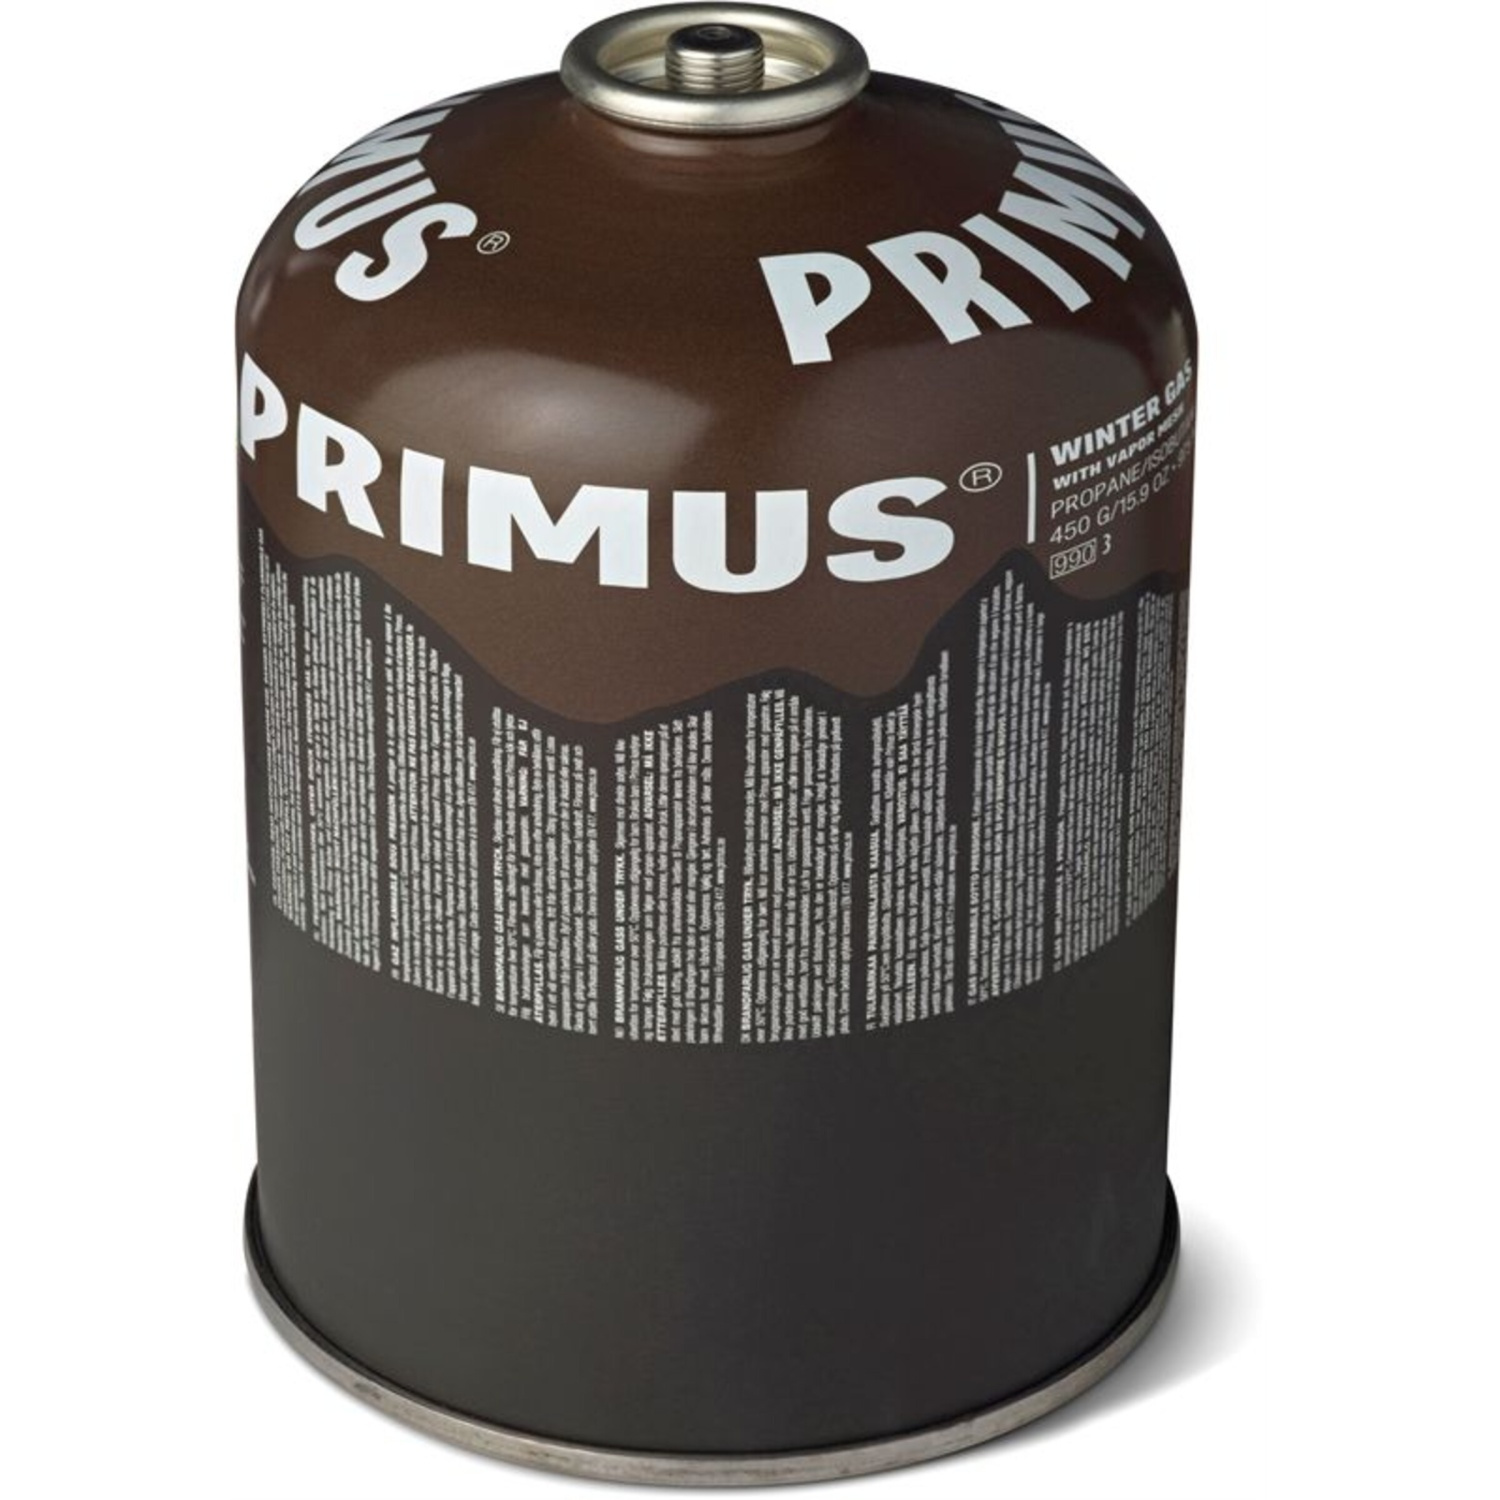 Primus Vinter Gas 450g